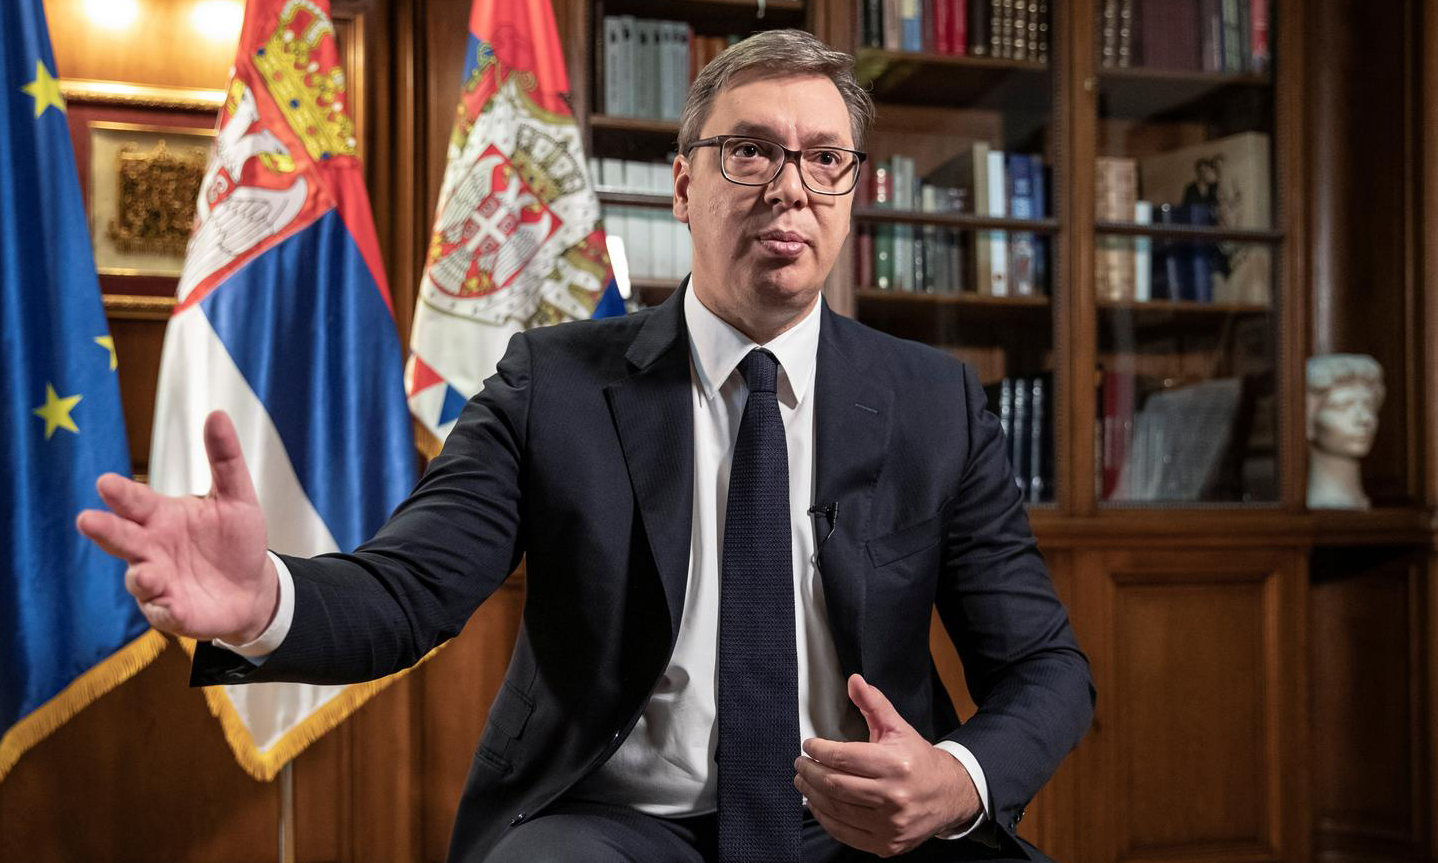 Tổng thống Serbia Aleksandar Vucic trong cuộc phỏng vấn ở thủ đô Belgrade hồi tháng 9/2020. Ảnh: Reuters.